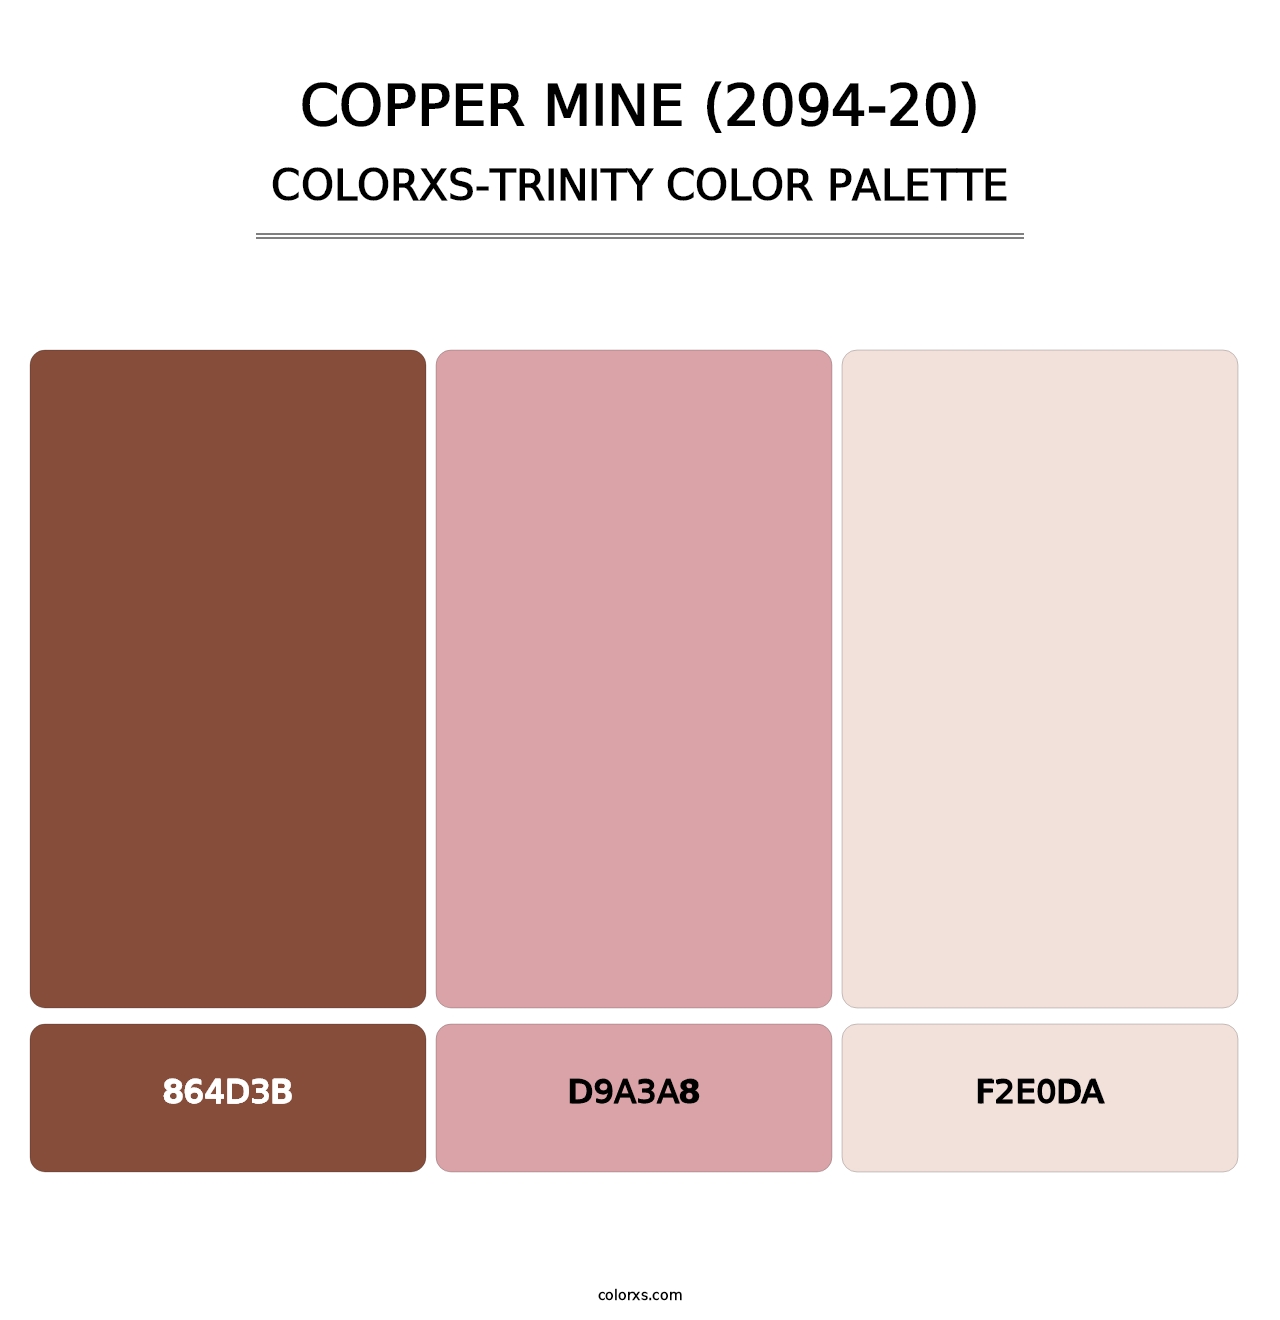 Copper Mine (2094-20) - Colorxs Trinity Palette